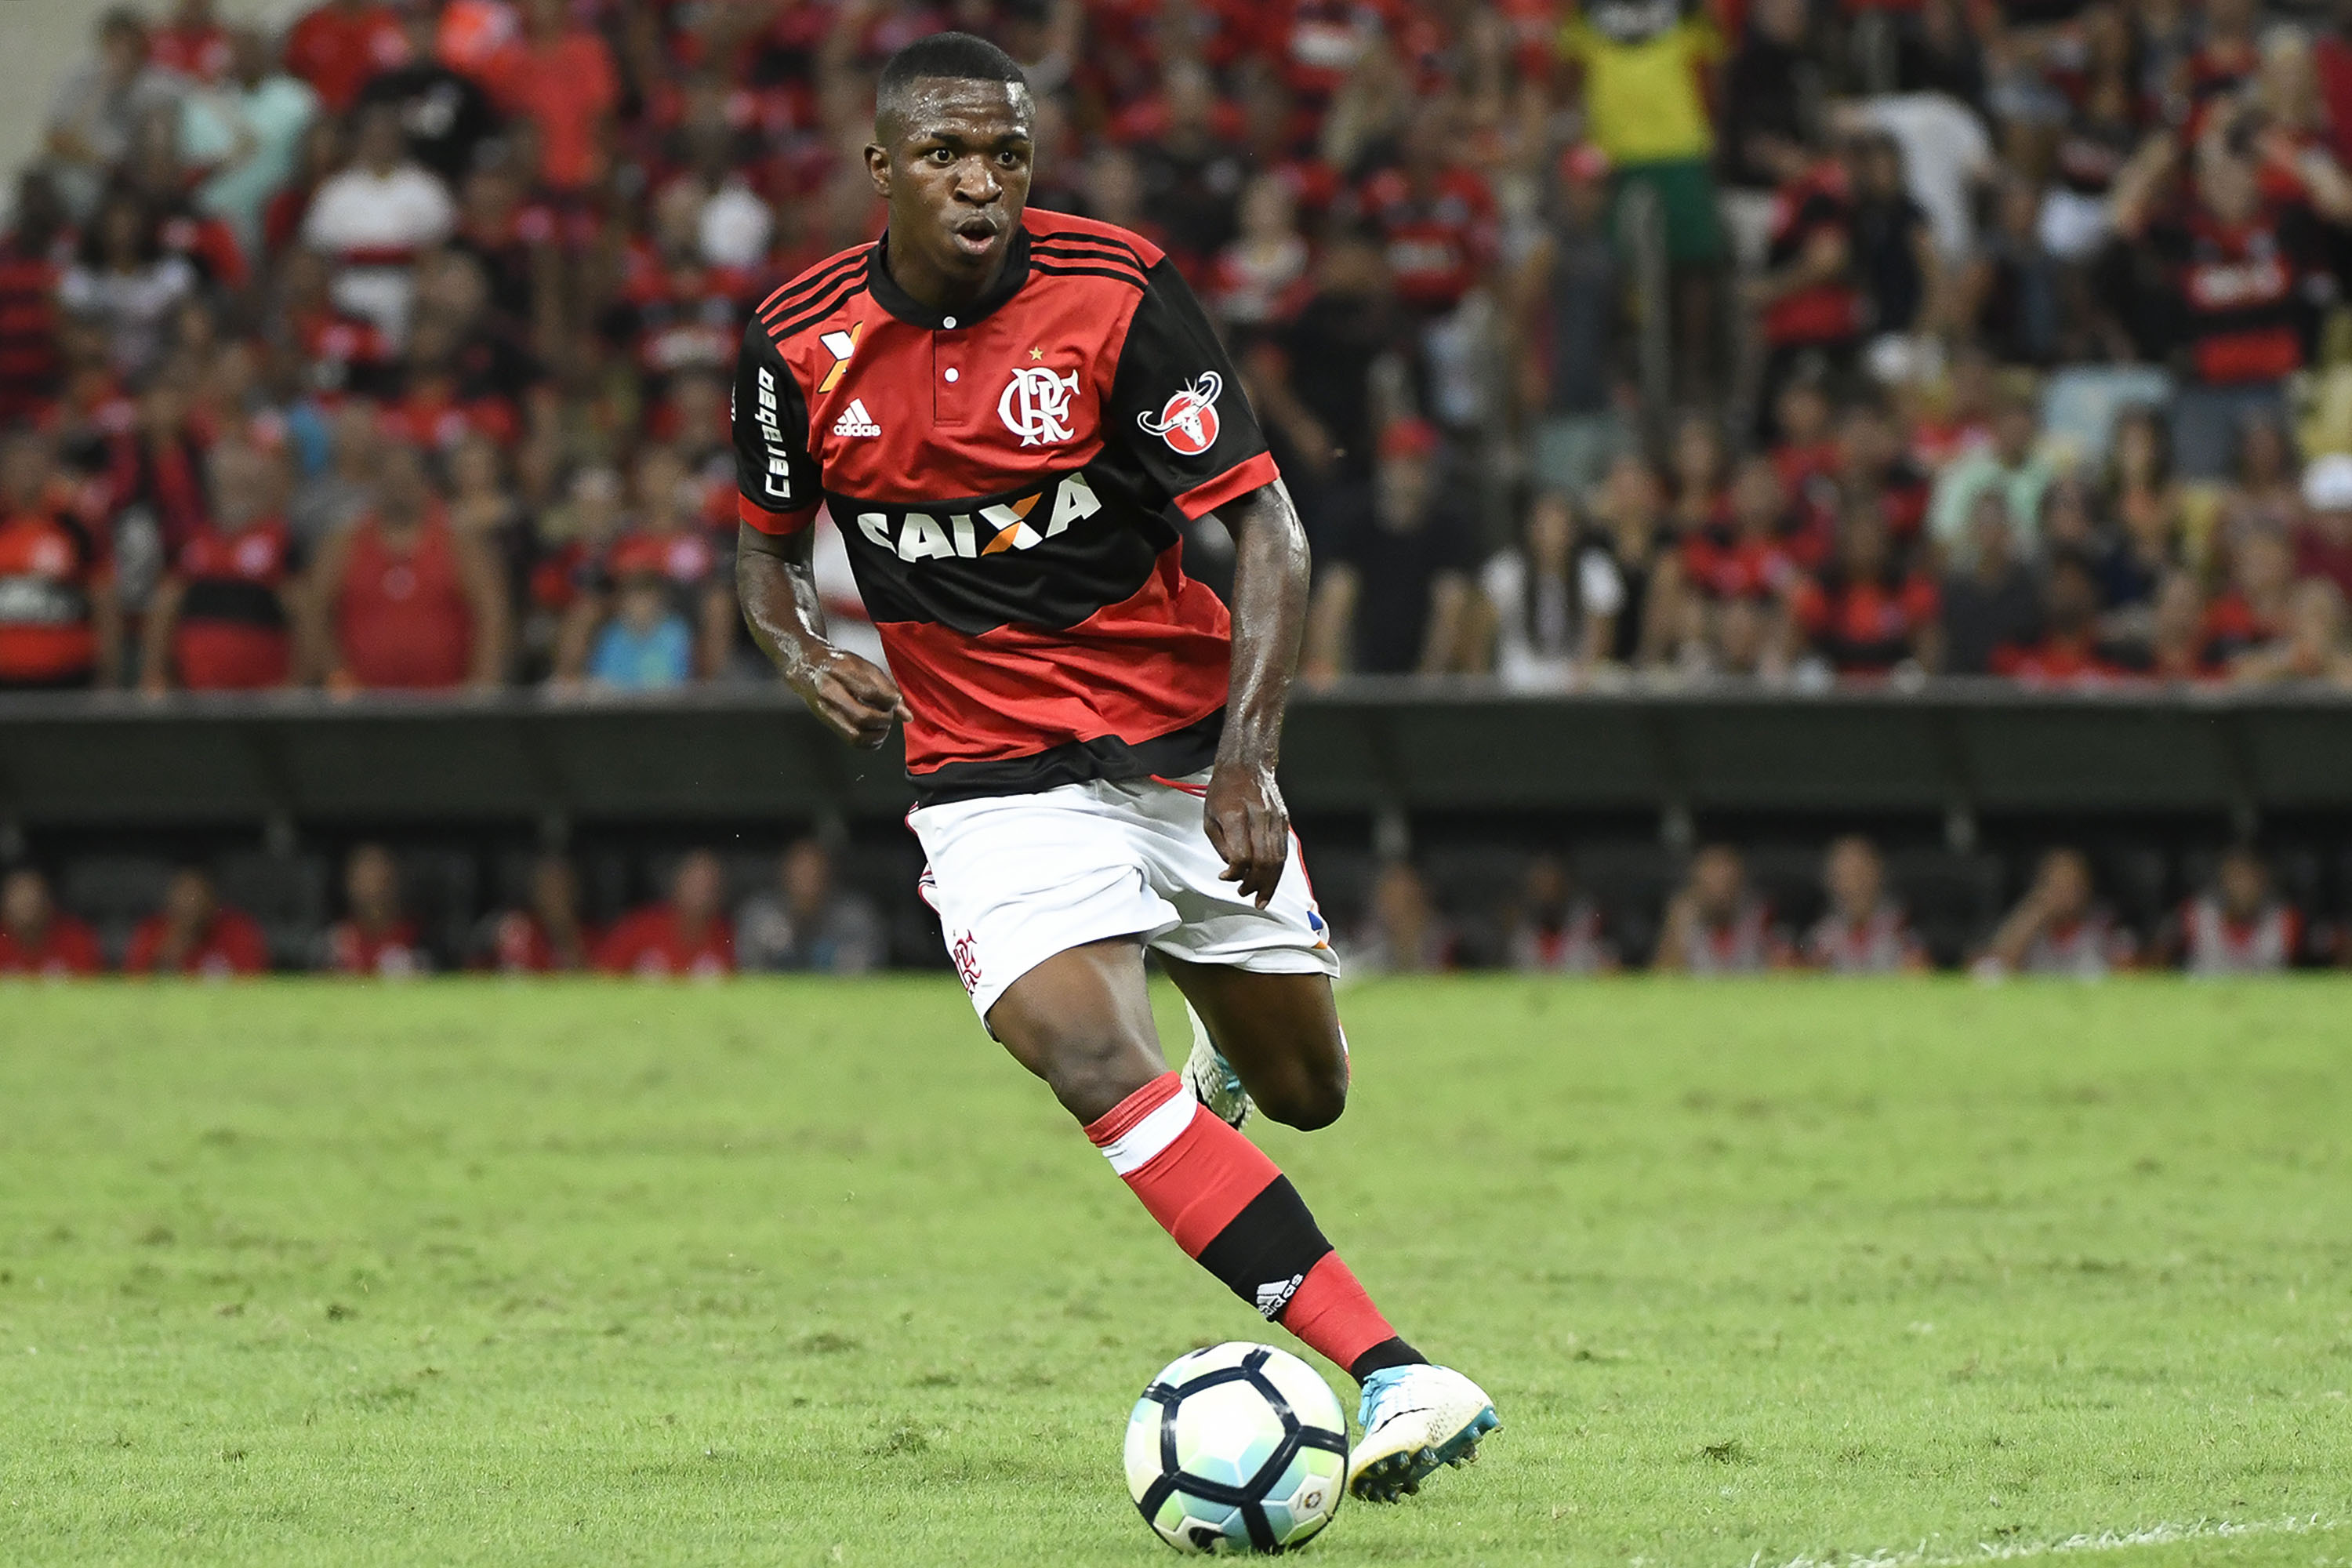 Flamengo dá aumento de salário e eleva multa de Vinícius Júnior para 45 mi  euros